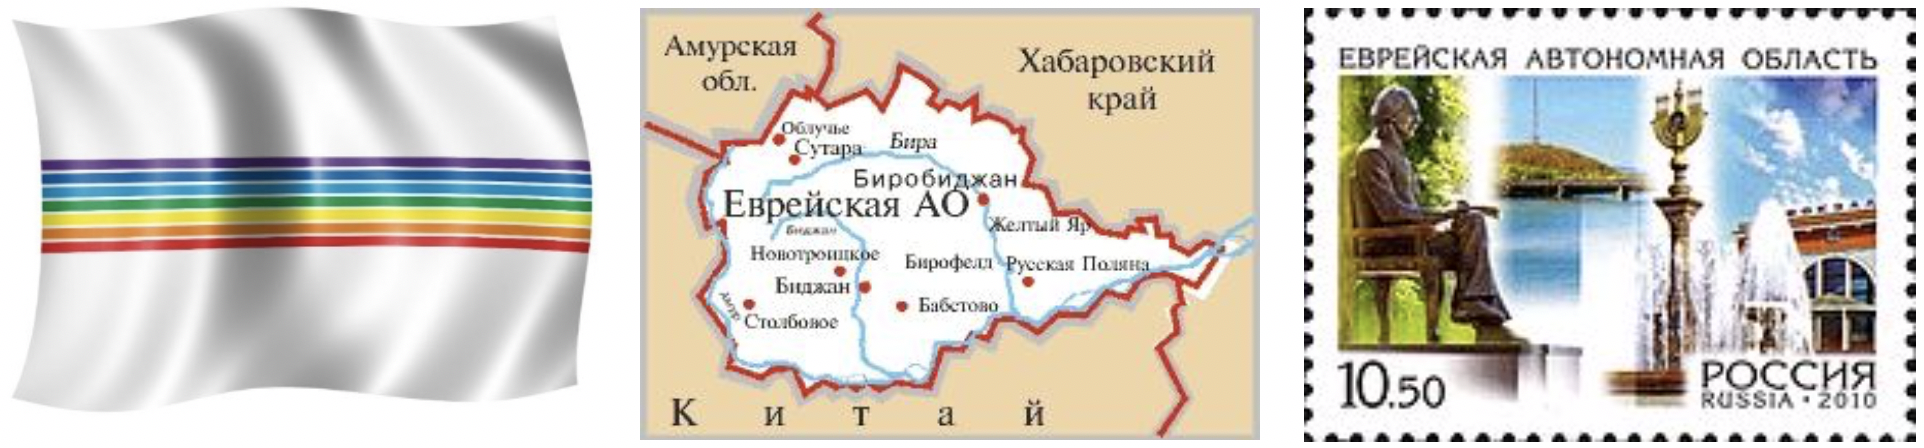 Европейская автономная область. Еврейская автономная область. Еврейская автономная область России. Флаг Еврейской автономной области. Еврейская автономная область на карте.